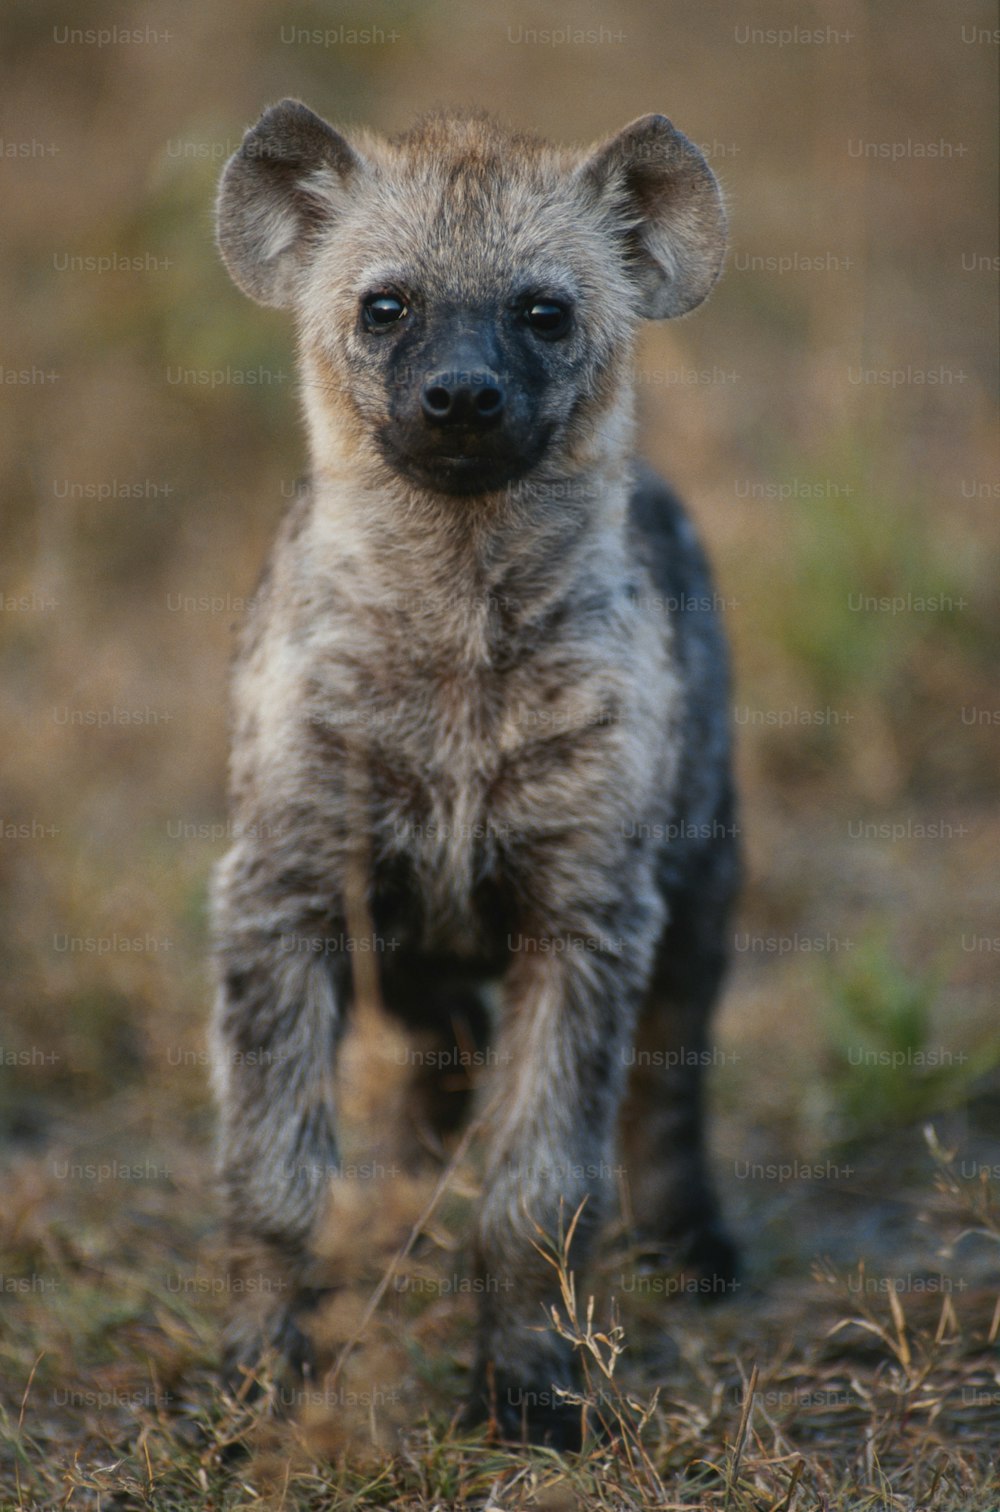 Un bébé hyène se tient dans l’herbe